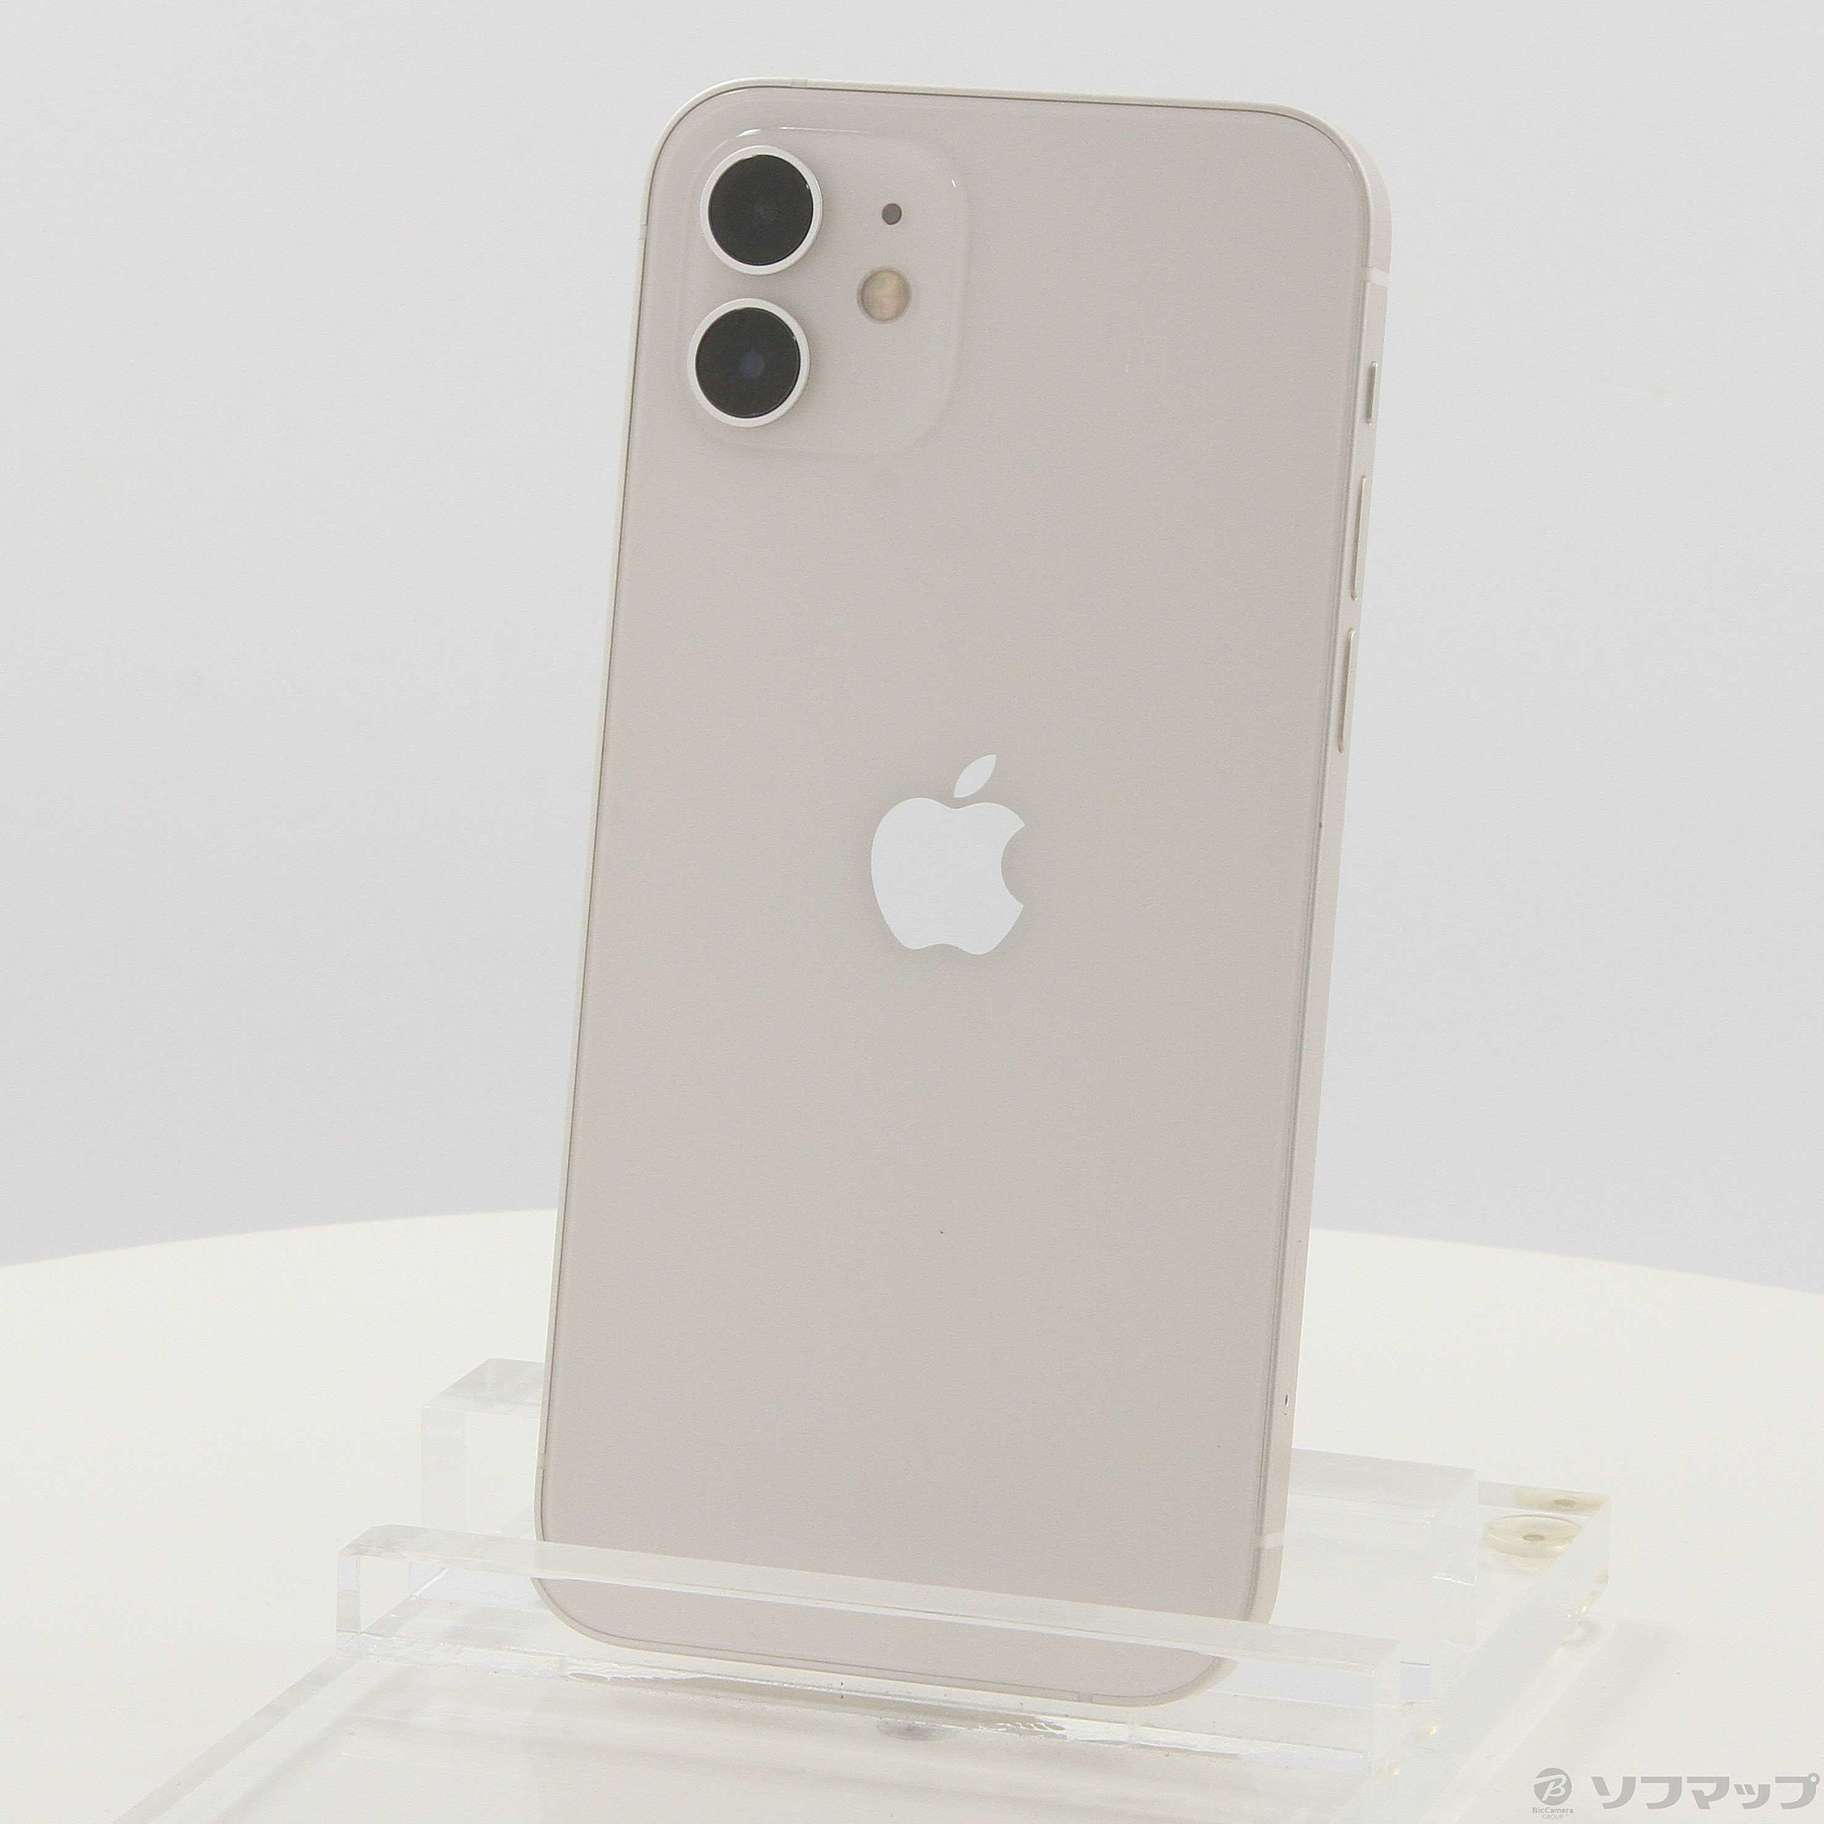 【好評人気】新品 iPhone12 64GB、本体、ホワイト 白、SIMロック解除済み スマートフォン本体